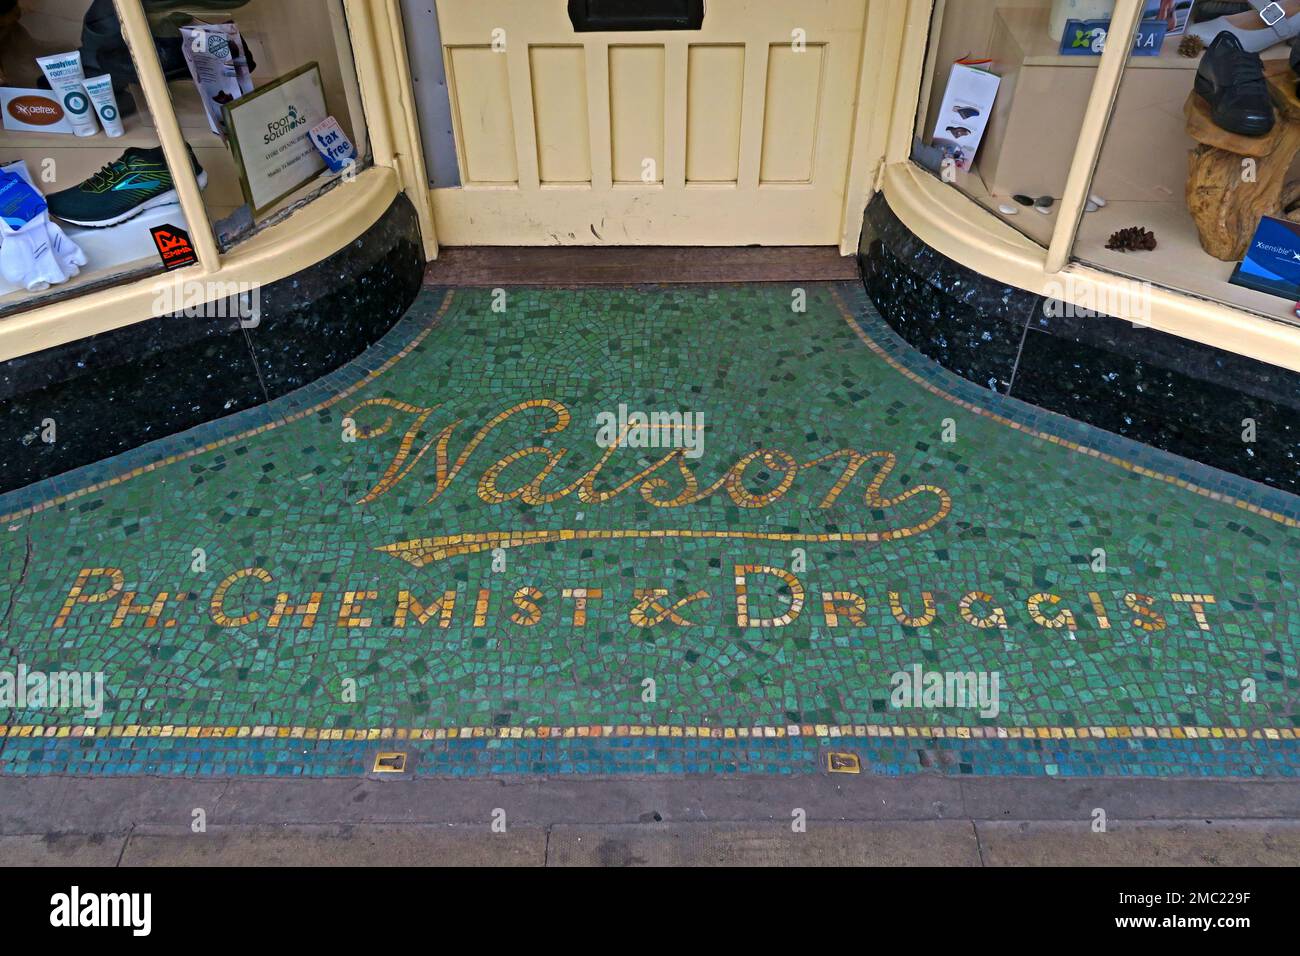 Eintritt und Mosaik zu Watson, Ph Chemist & Druggist, Apotheke, jetzt Foot Solutions, 61 South Great George's Street, Dublin, D02 VR83, Eire, Irland Stockfoto